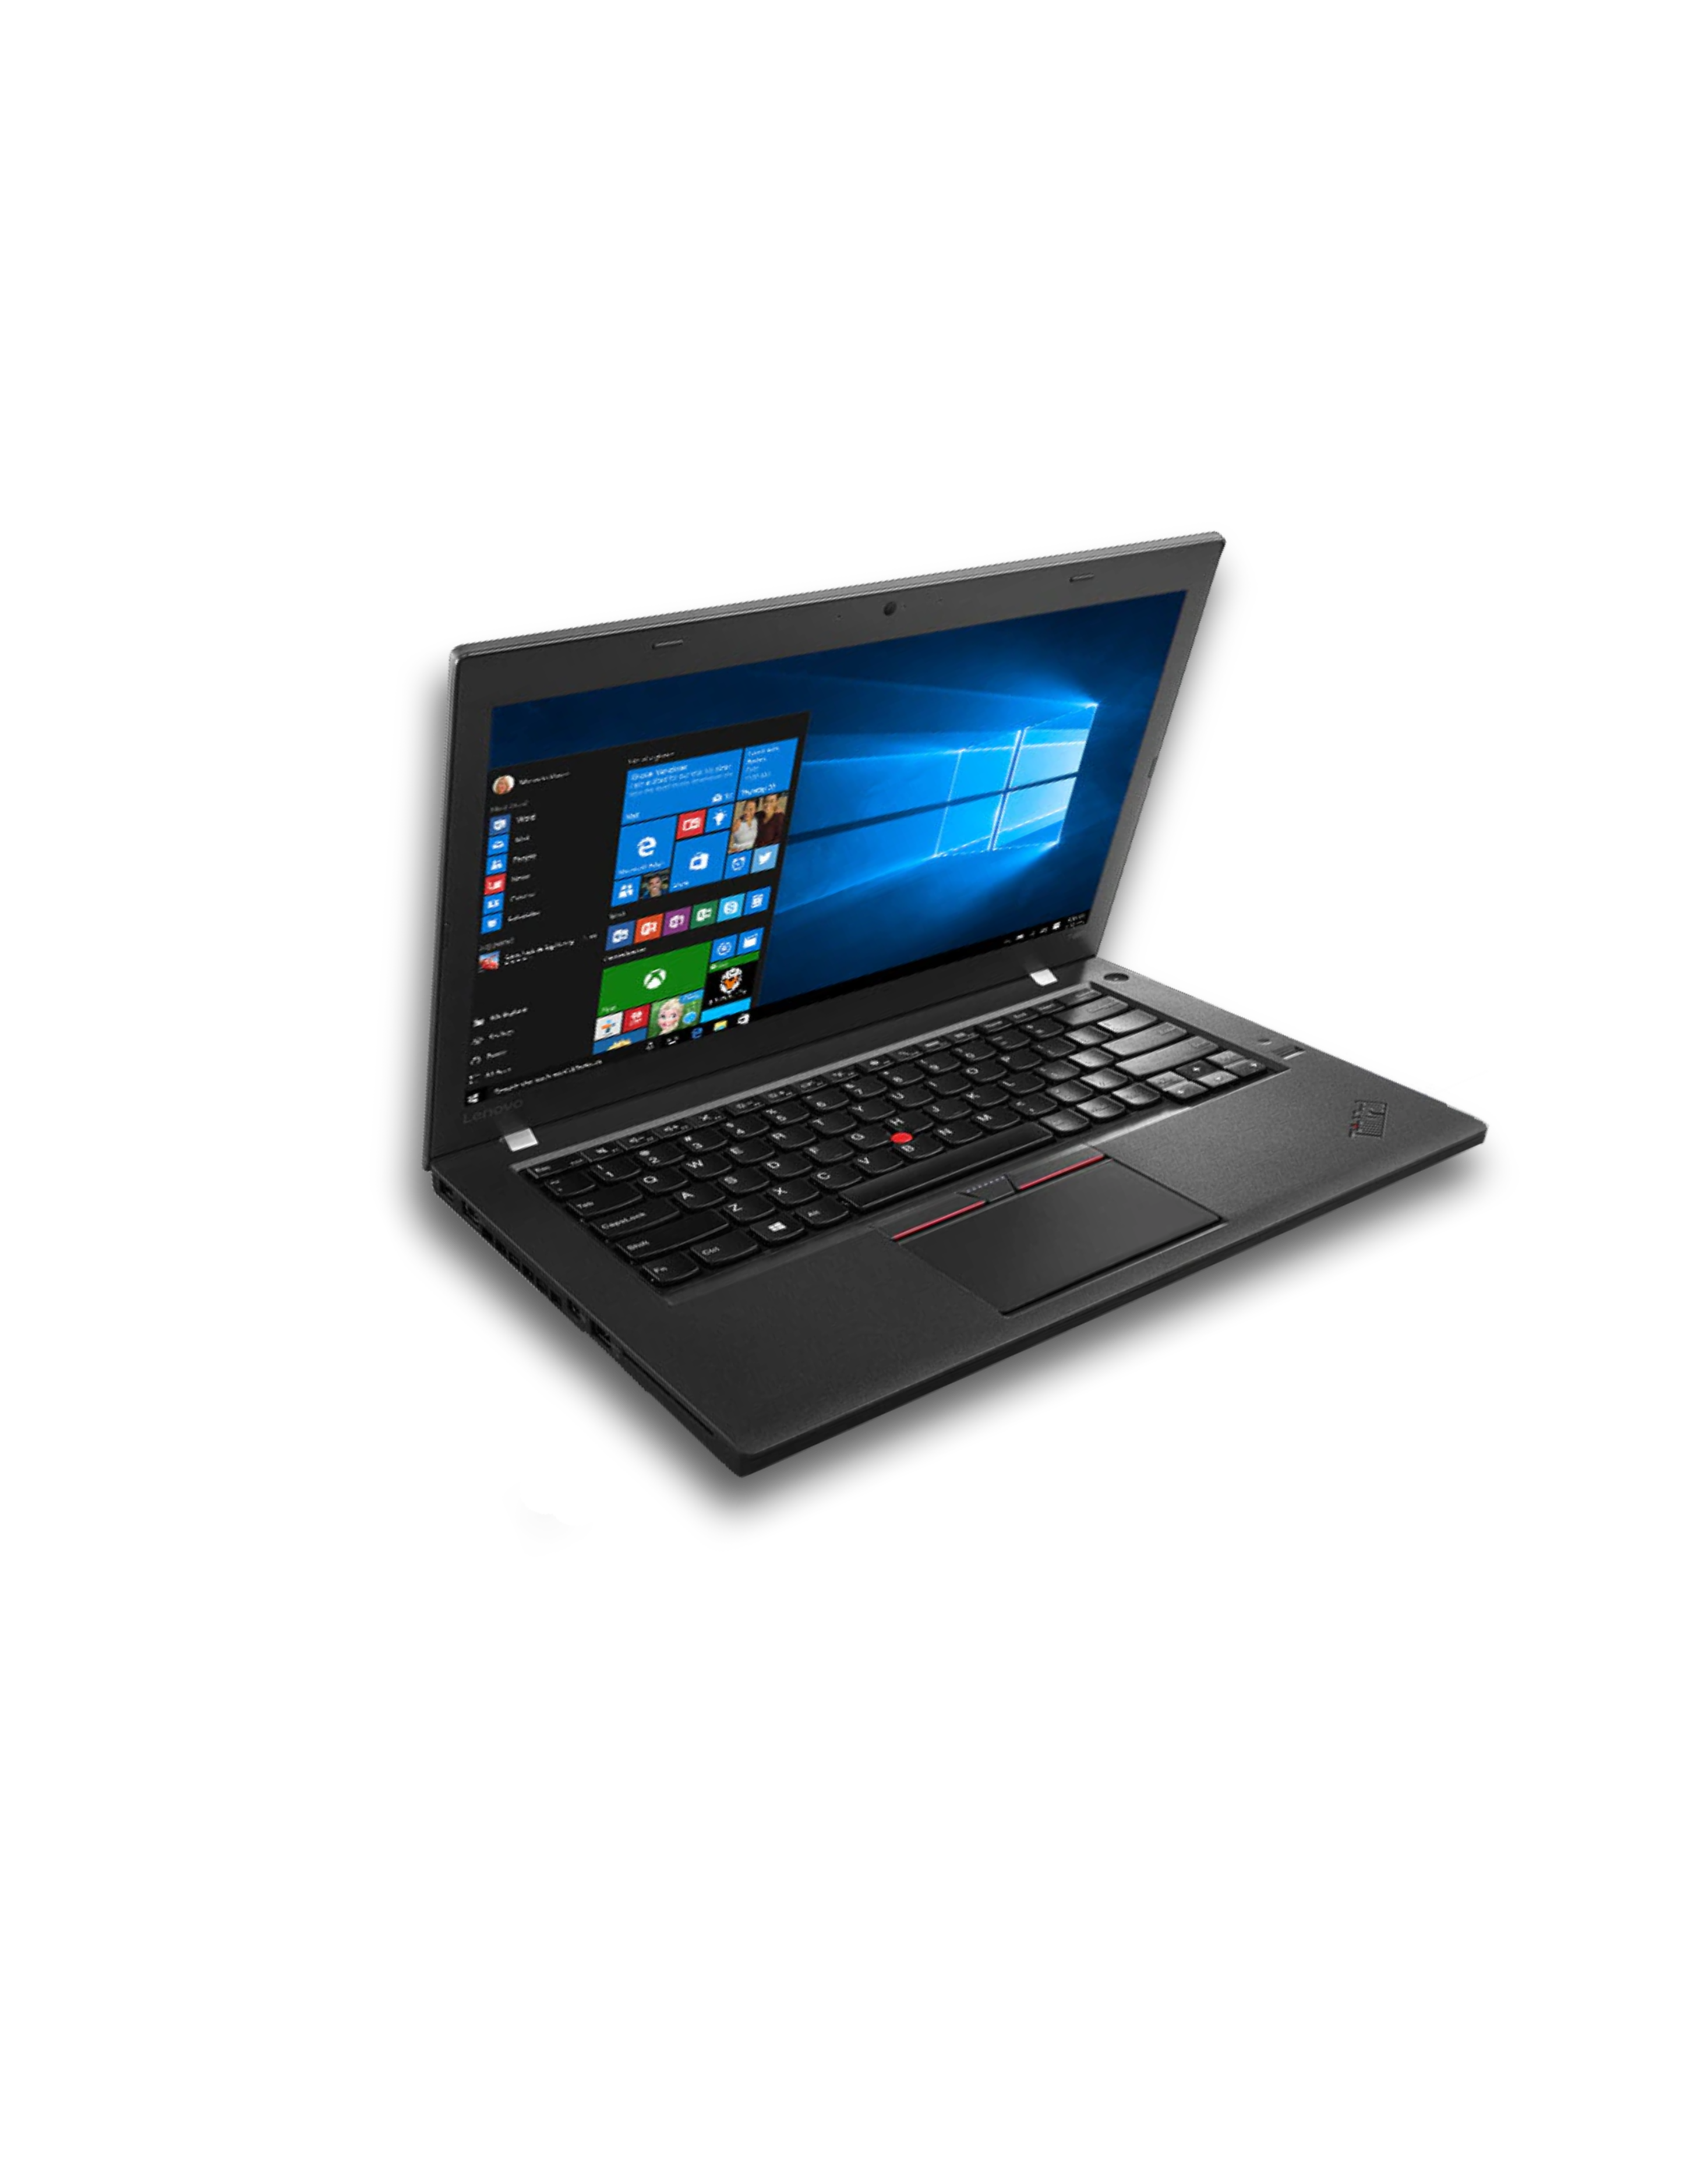 Lenovo T460 Core I5 6ta 8Gb 240Ssd Windows 10 Pro (Reacondicionado)